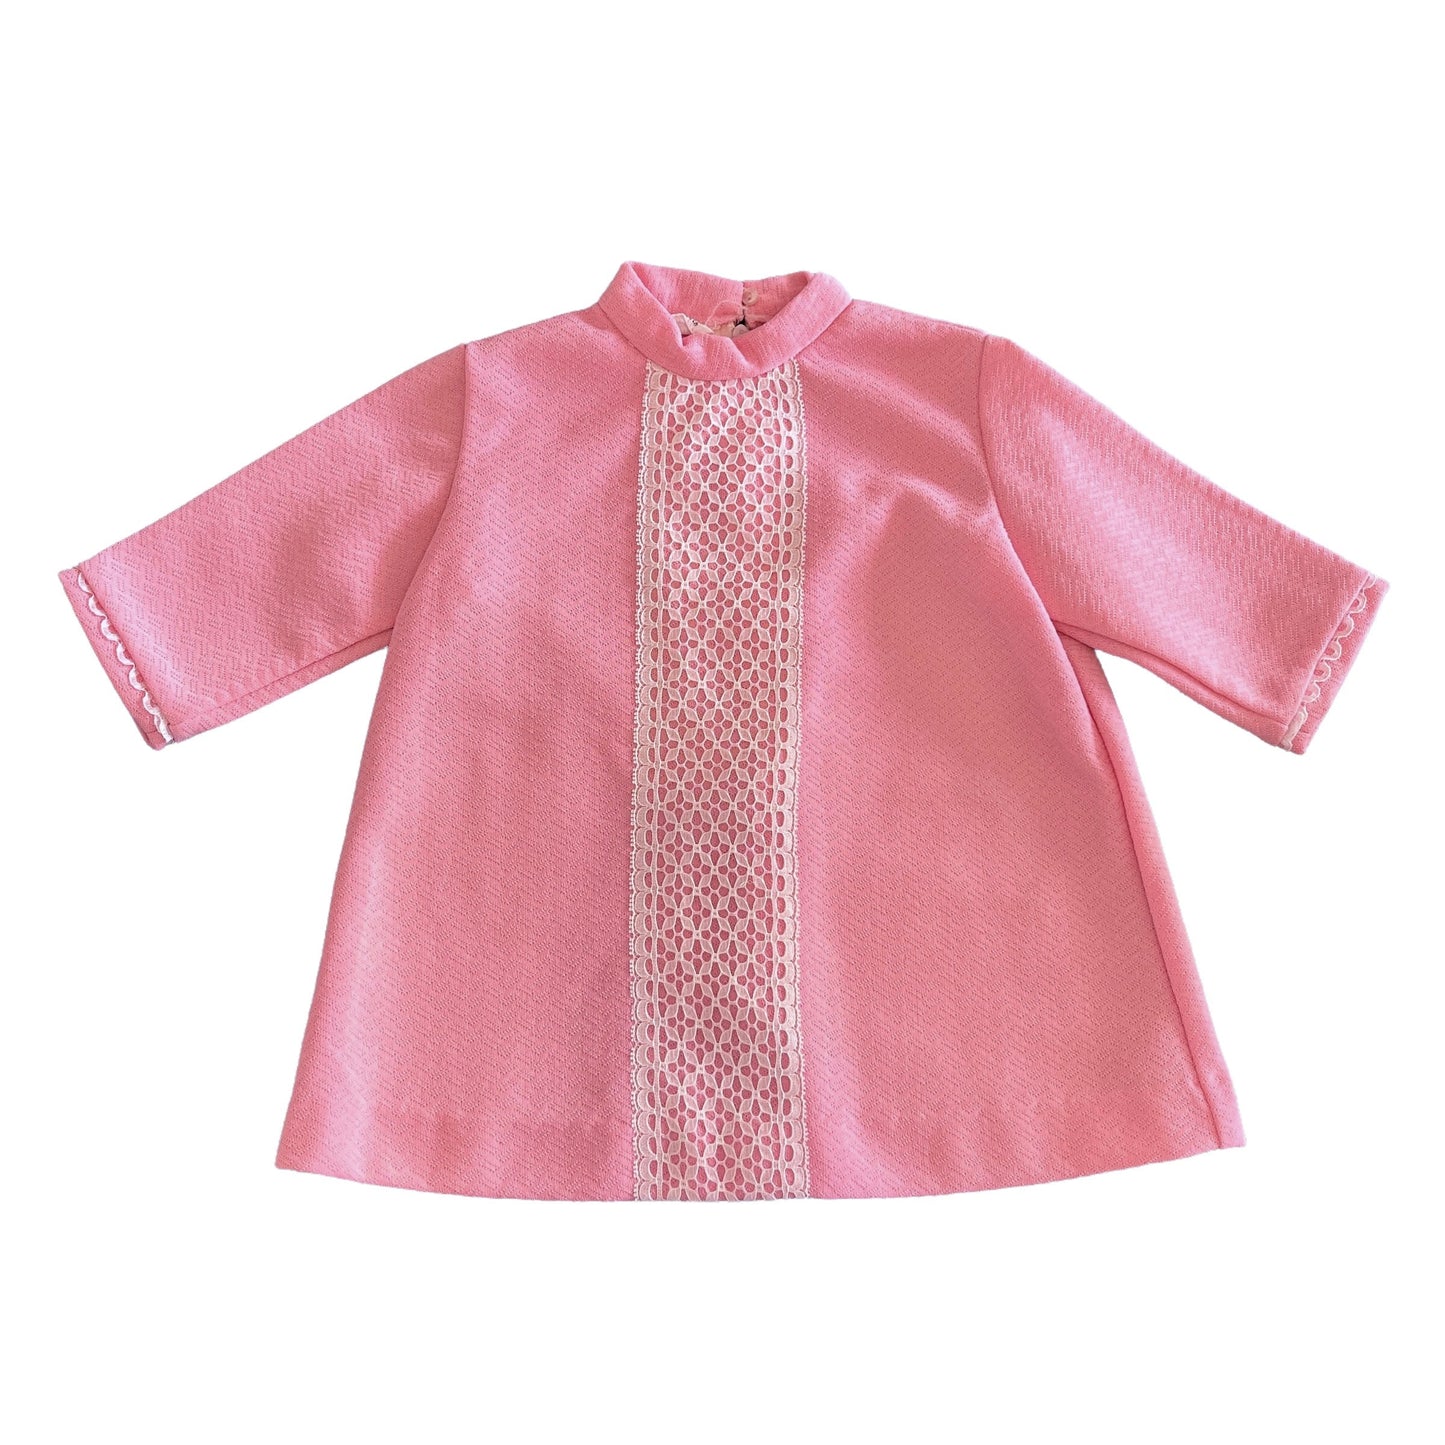 Vintage 1960s Pink Mod Dress 6-9 Months